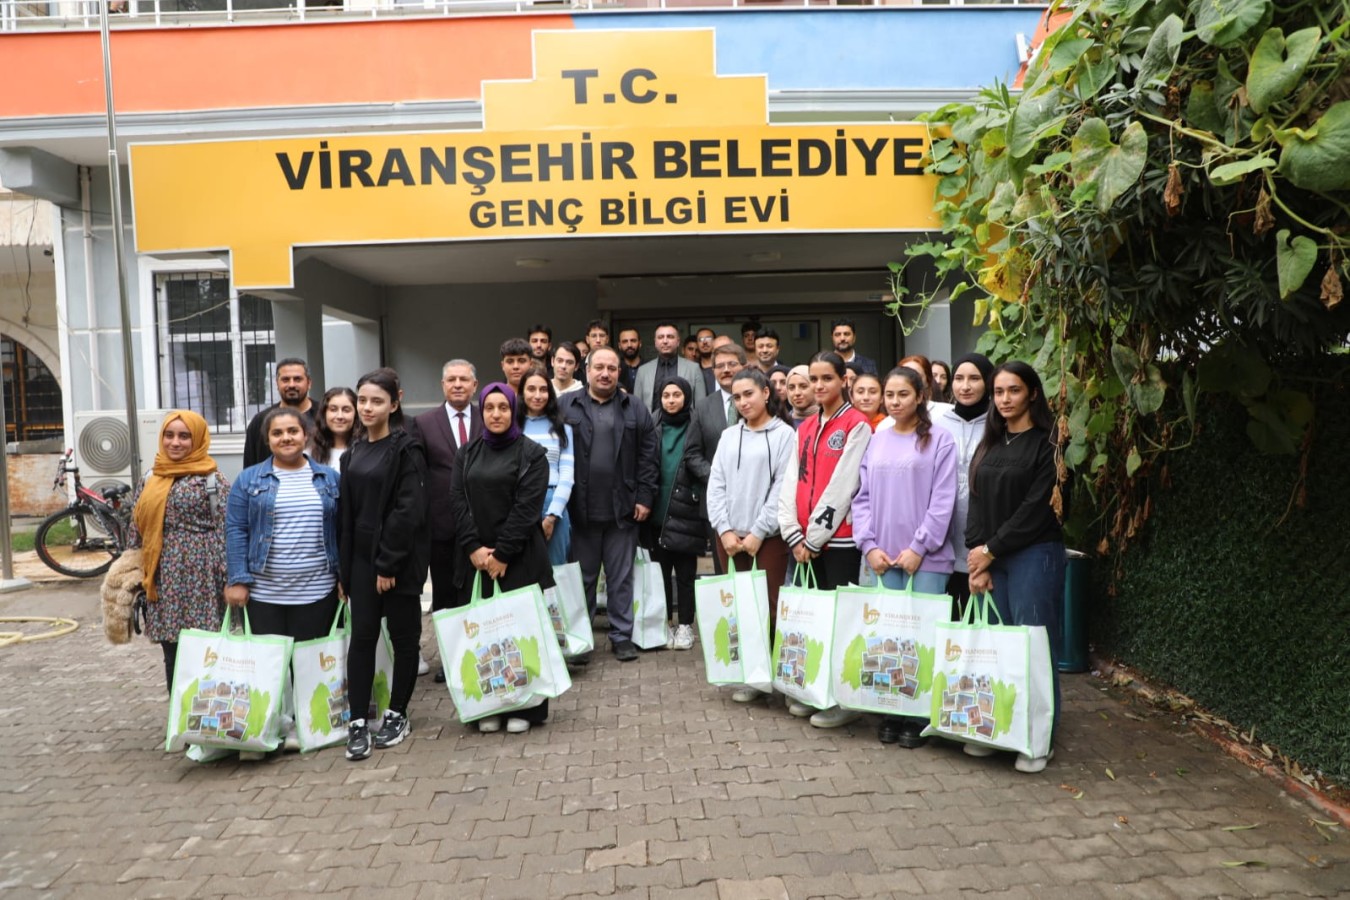 Viranşehir Belediyesinden gençlere kitap seti desteği;